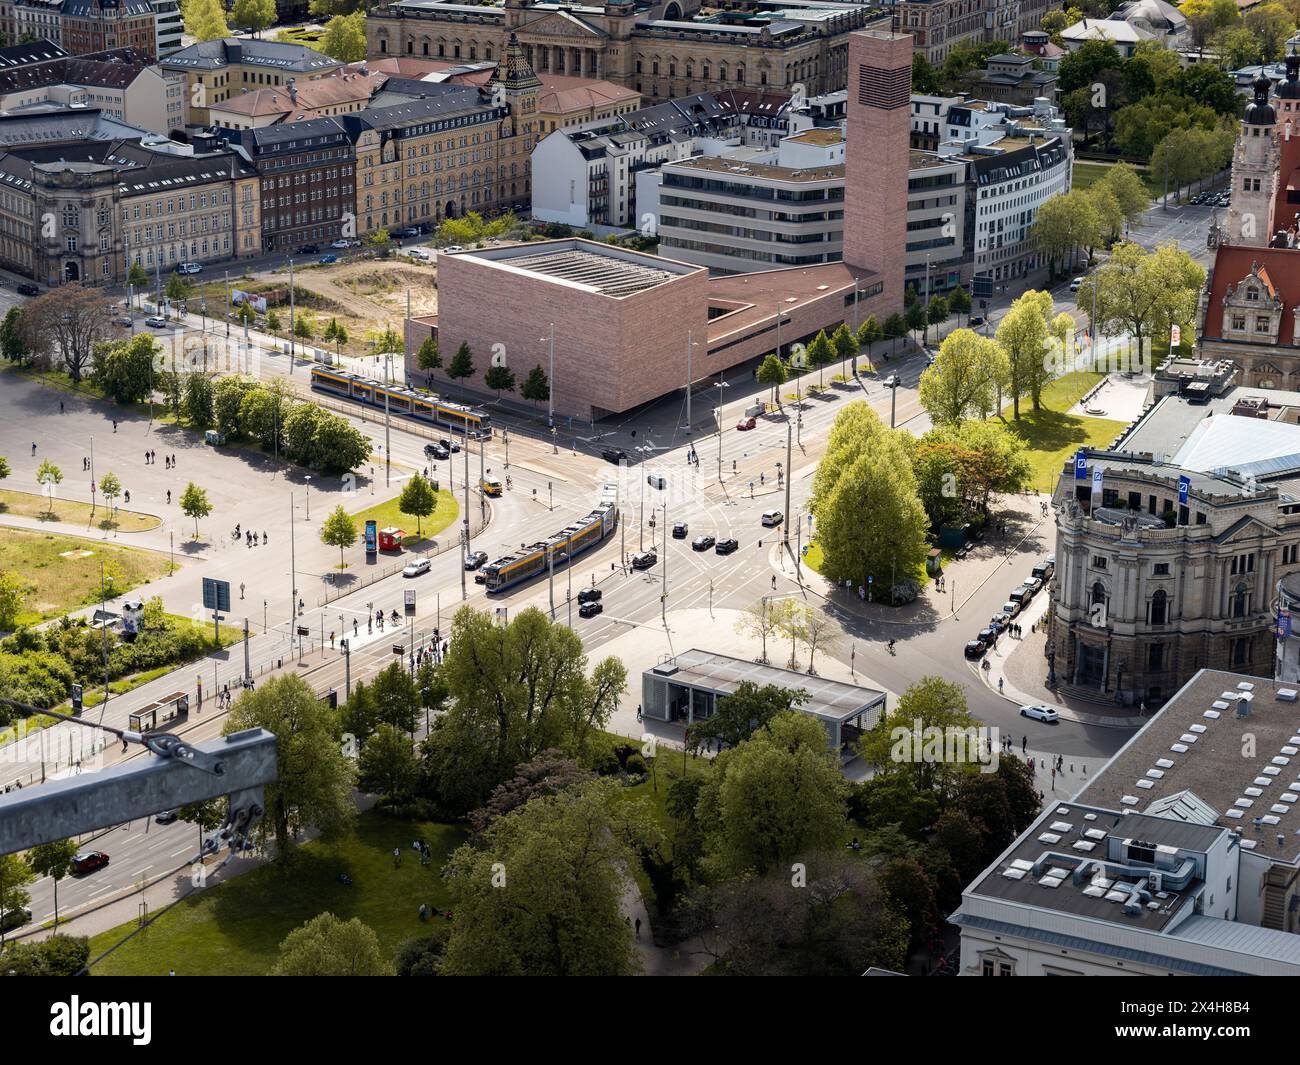 Grosse Straßenkreuzung am Wilhelm-Leuschner-Platz in Leipzig. Städtische Infrastruktur und verschiedene Verkehrsmittel innerhalb der Stadt. Stockfoto